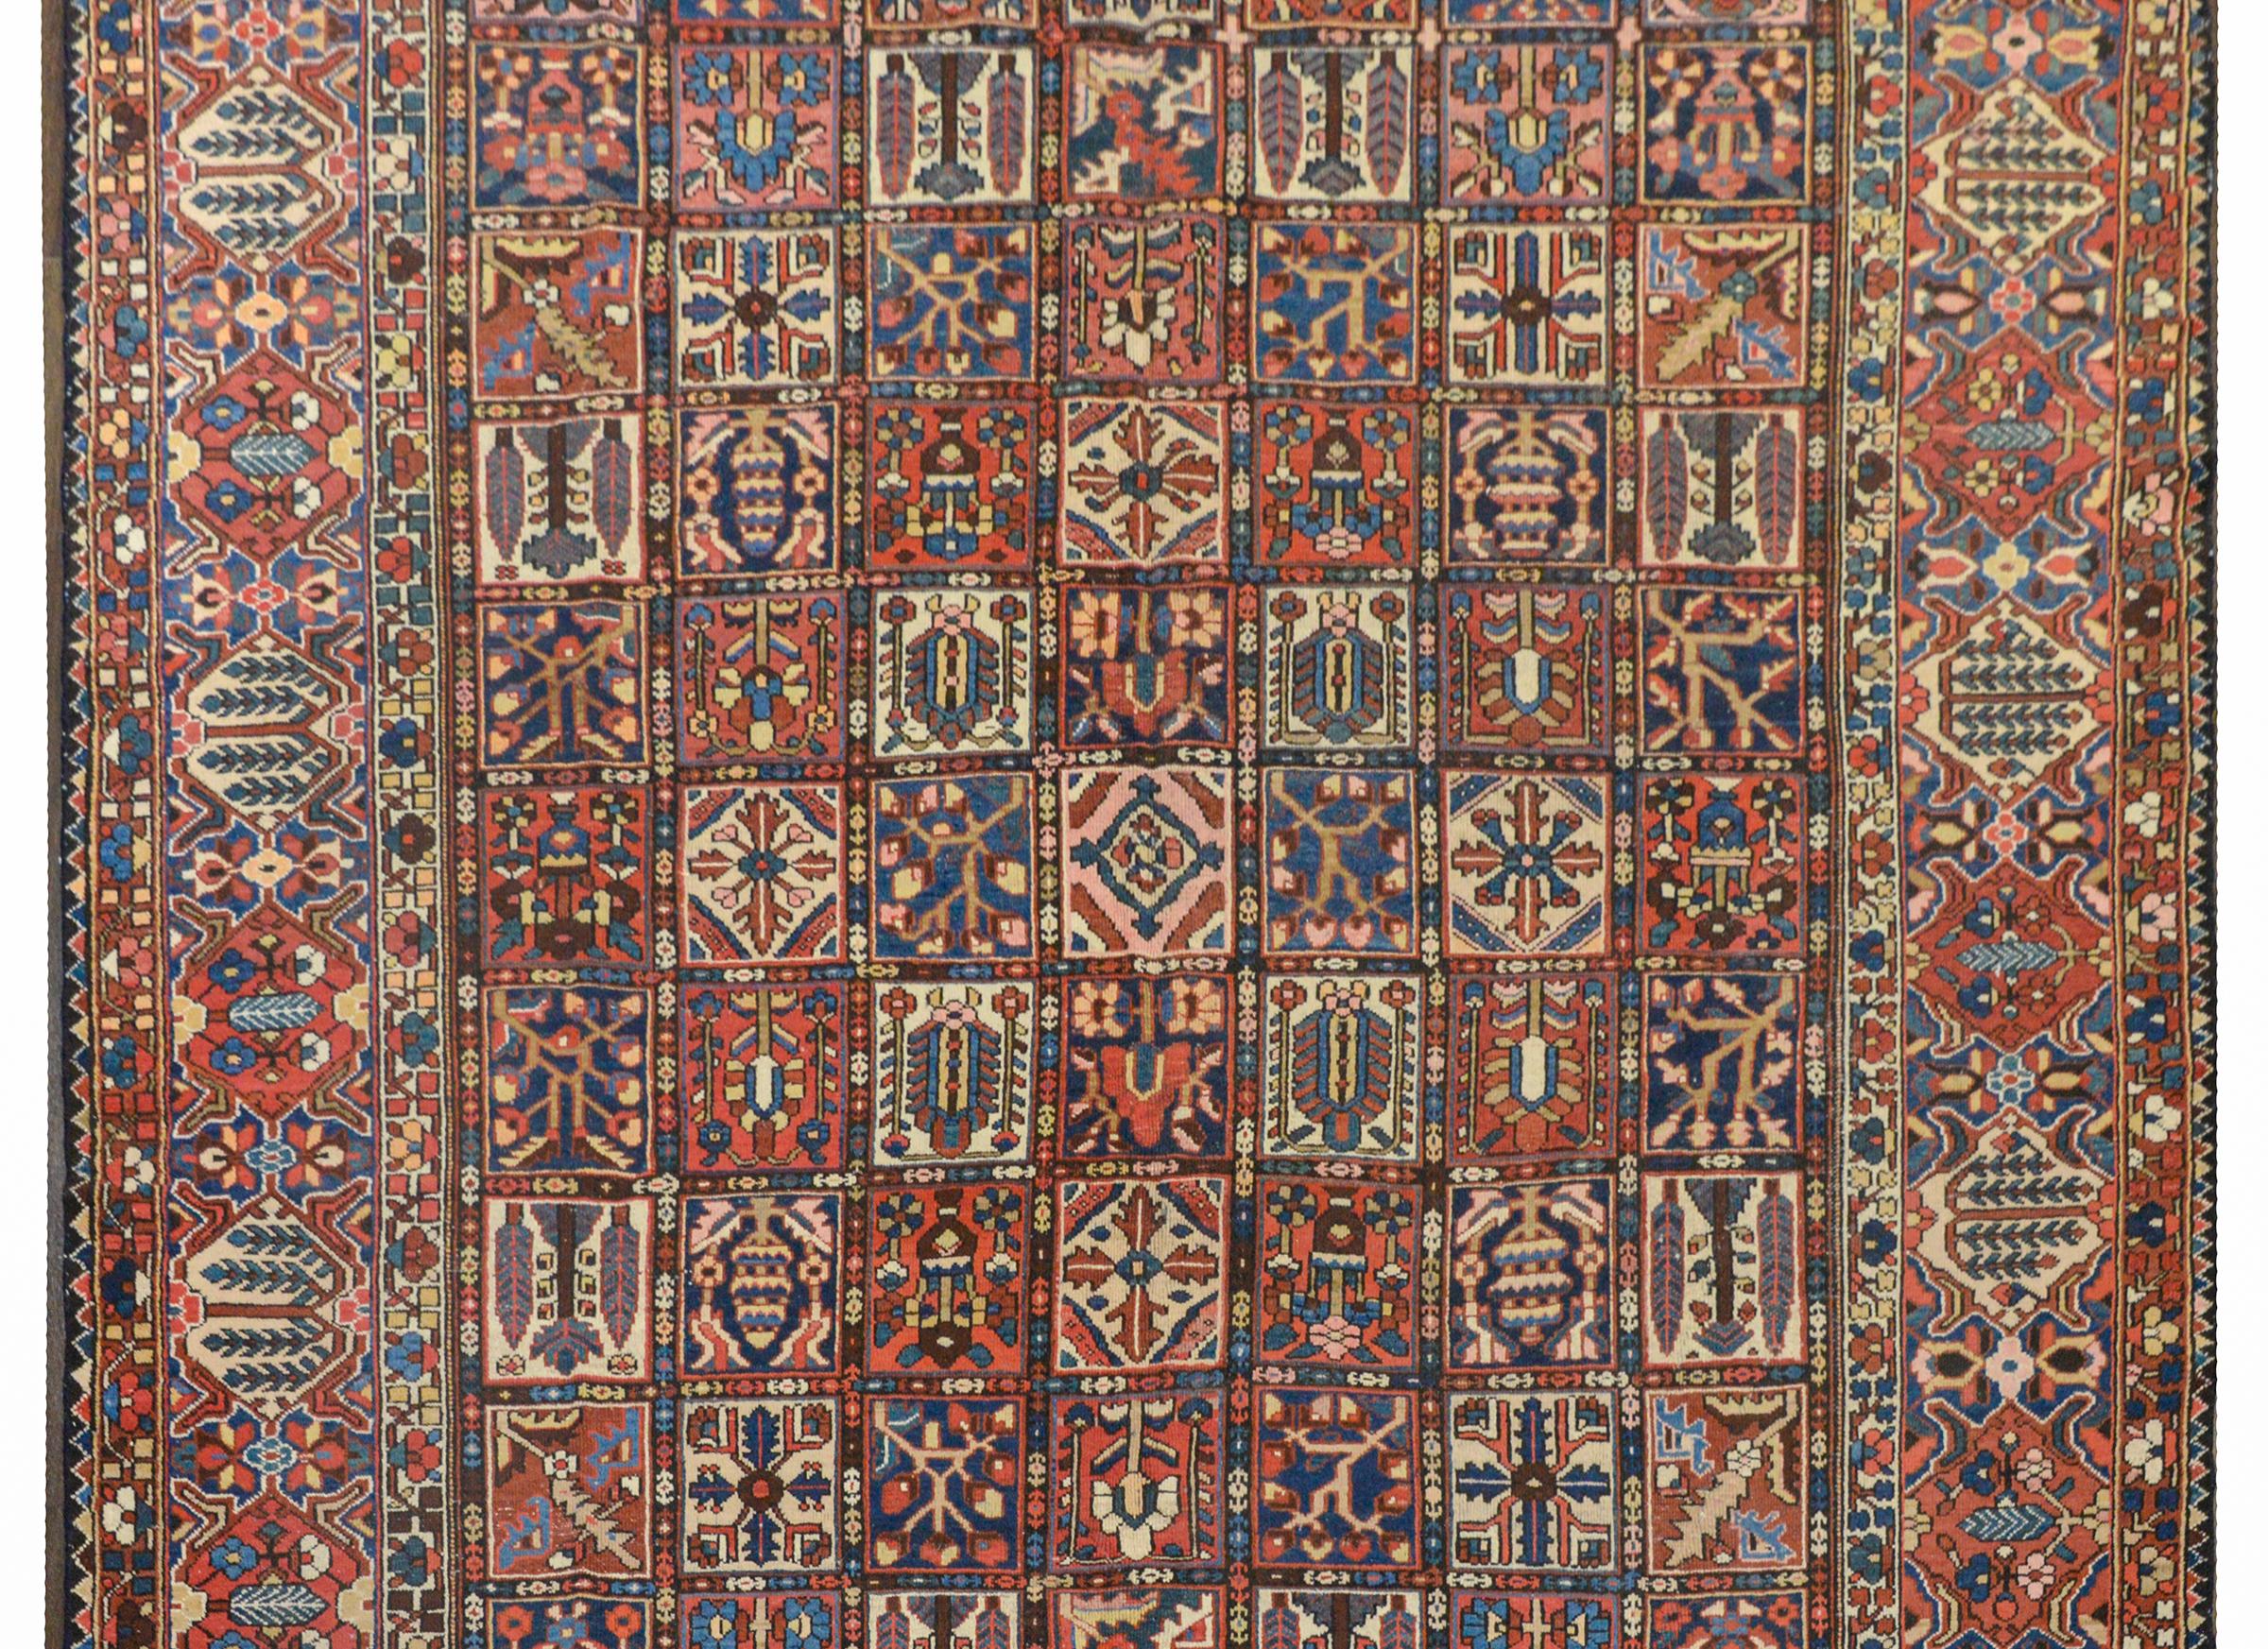 Ein wunderbarer persischer Bachtiari-Teppich aus dem frühen 20. Jahrhundert mit einem Patchwork-Muster aus unzähligen stilisierten Blumen und Bäumen, gewebt aus purpurroter, hell- und dunkelindigoblauer, grüner und cremefarbener Wolle, umgeben von